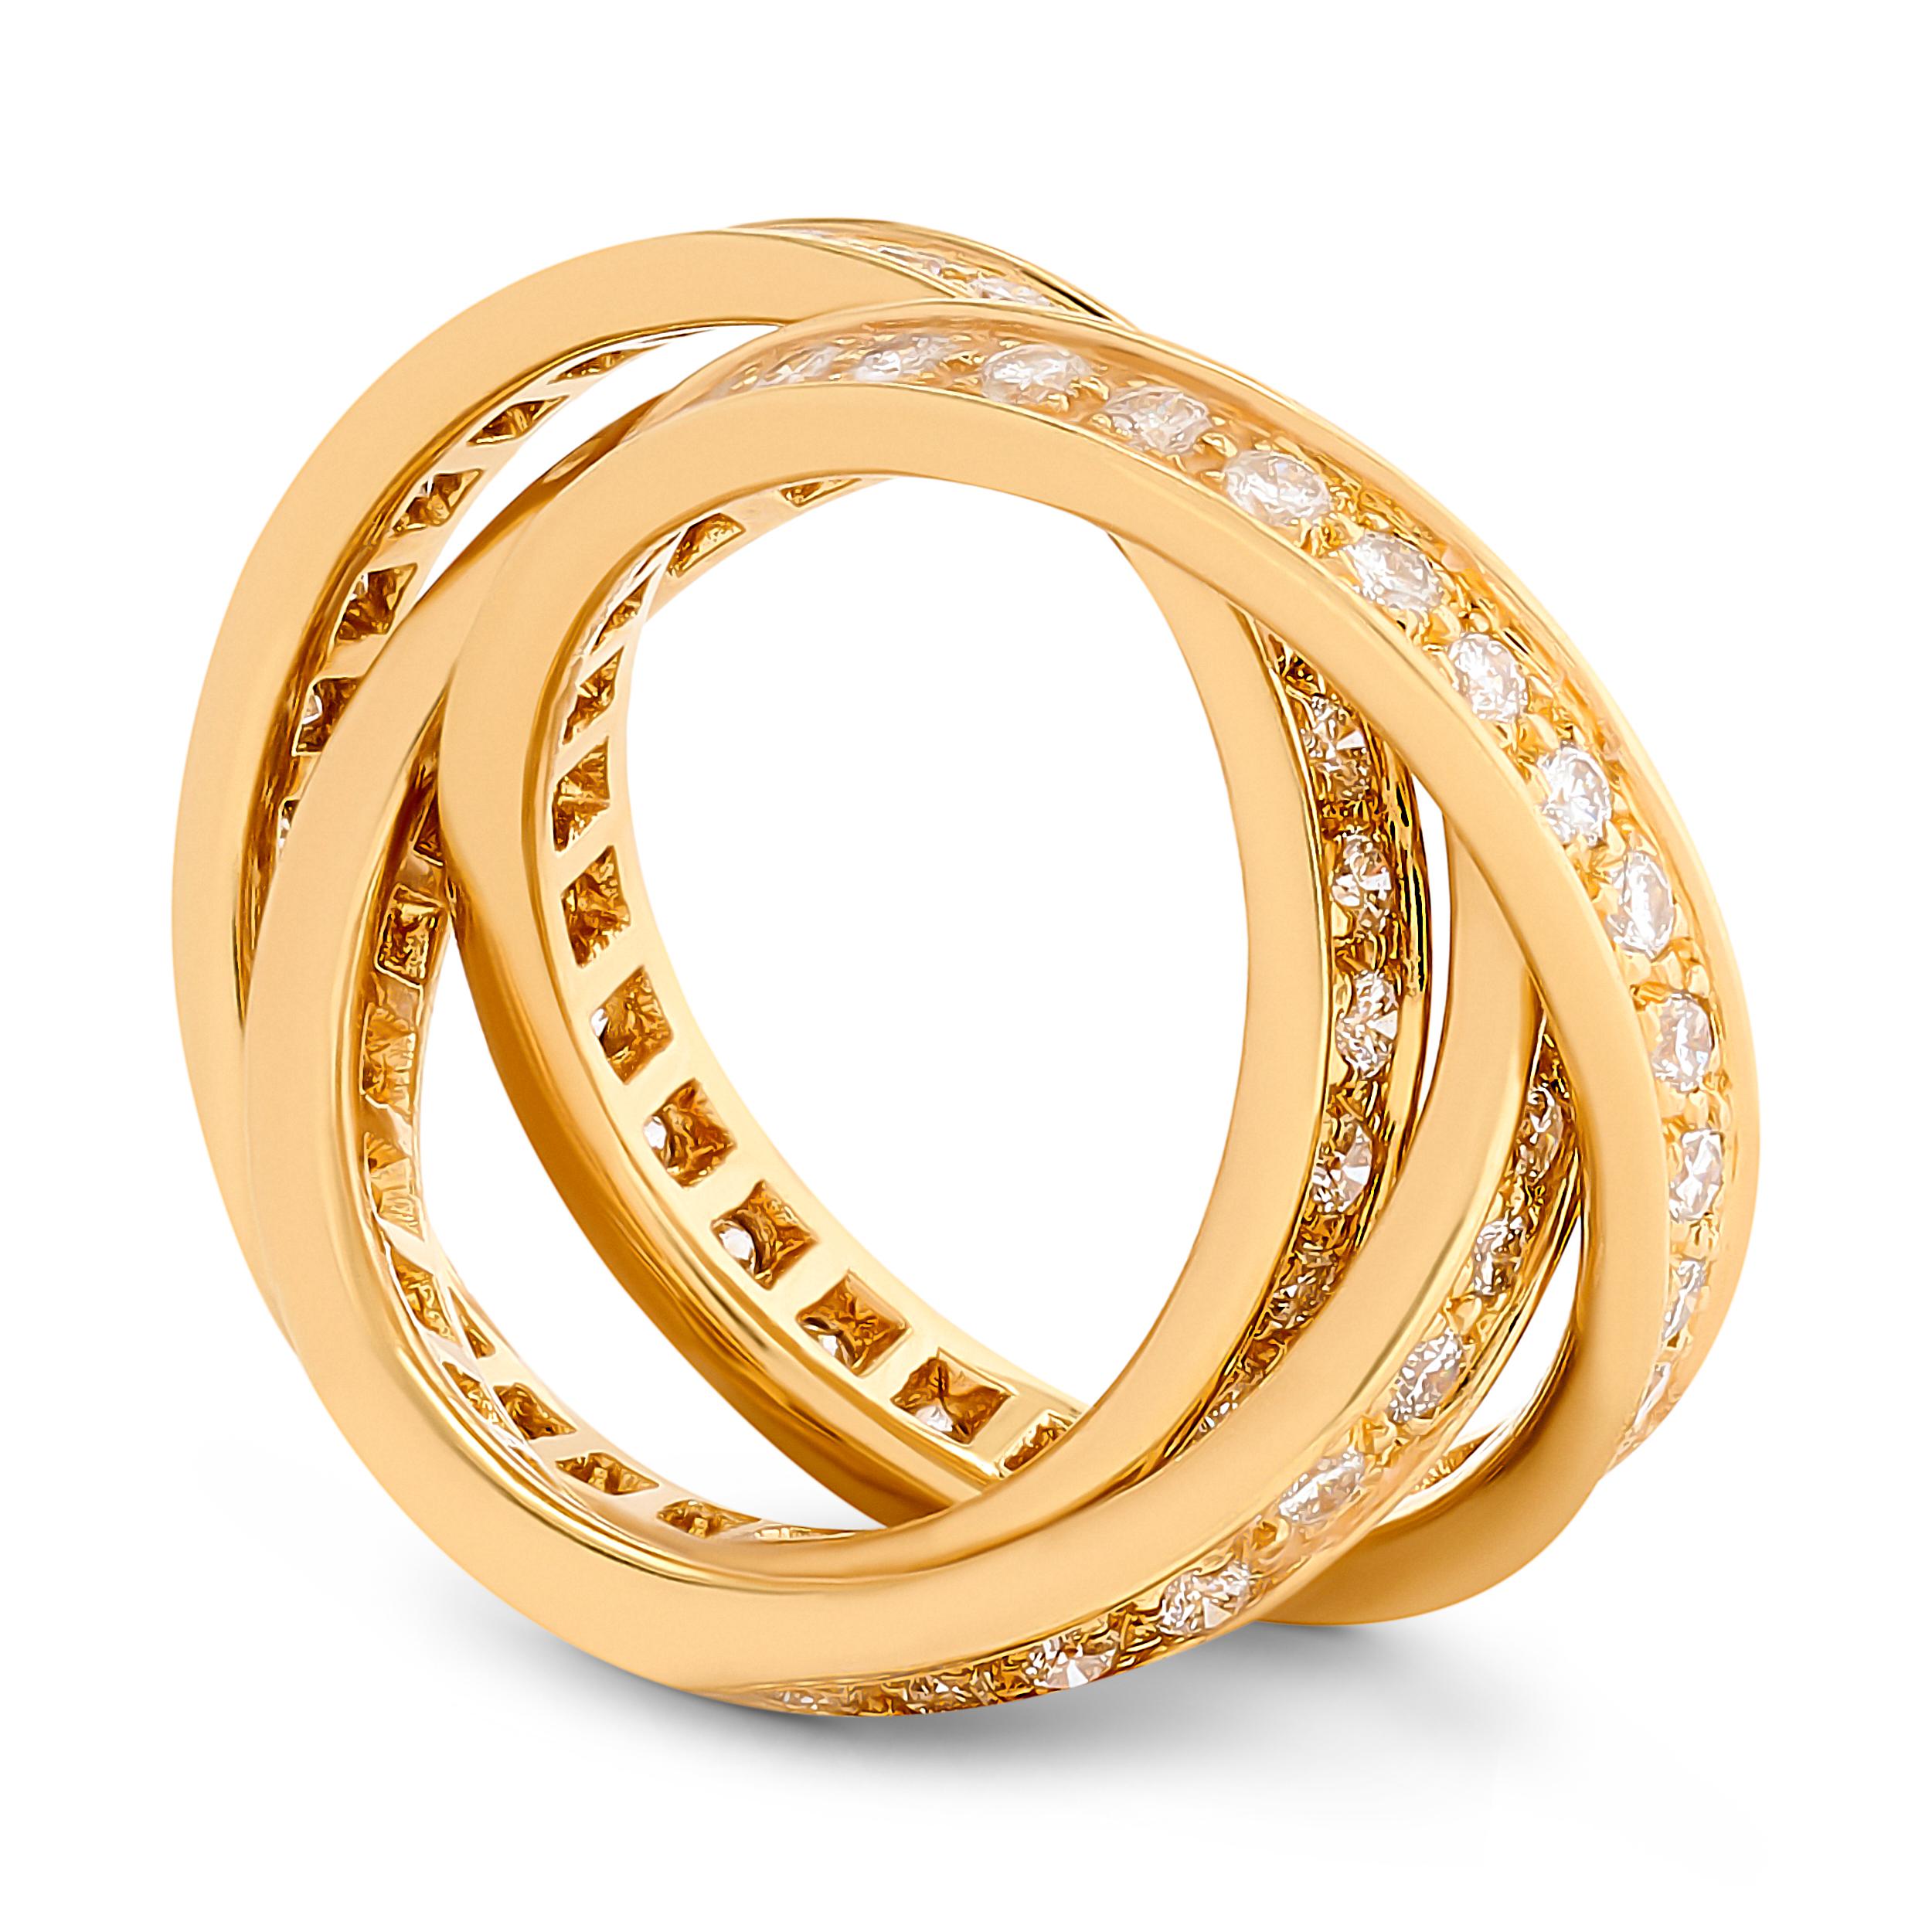 Der Cartier-Diamant-Trinitätsring aus 18 Karat Gelbgold besticht durch einen harmonischen Tanz von Diamanten und Gold, der bei jeder Drehung Eleganz ausstrahlt.

Dieser Ring von Cartier besteht aus 3 ineinandergreifenden Bändern, die mit ca. 1,55